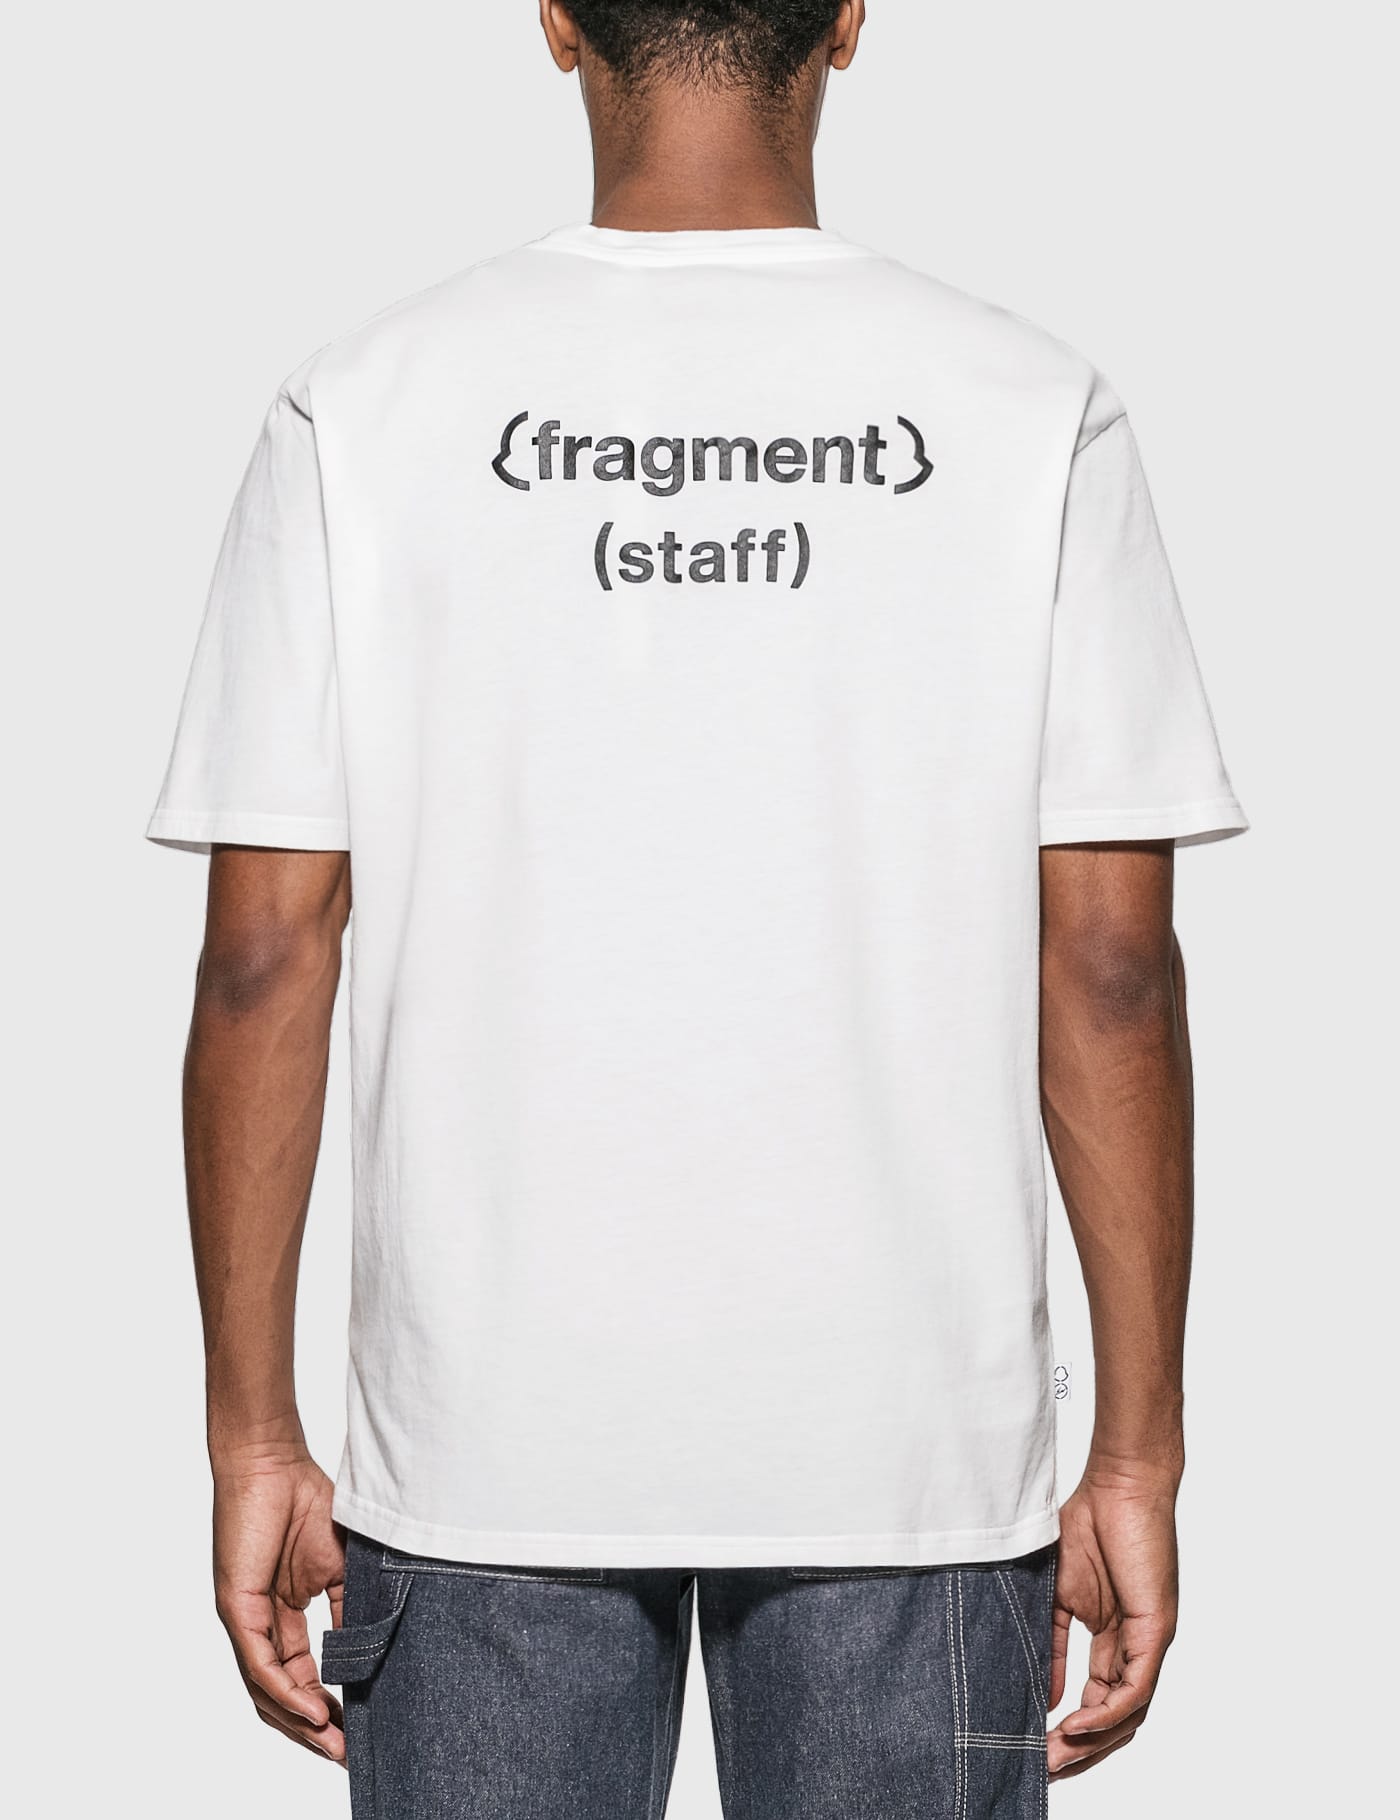 moncler x fragment t shirt